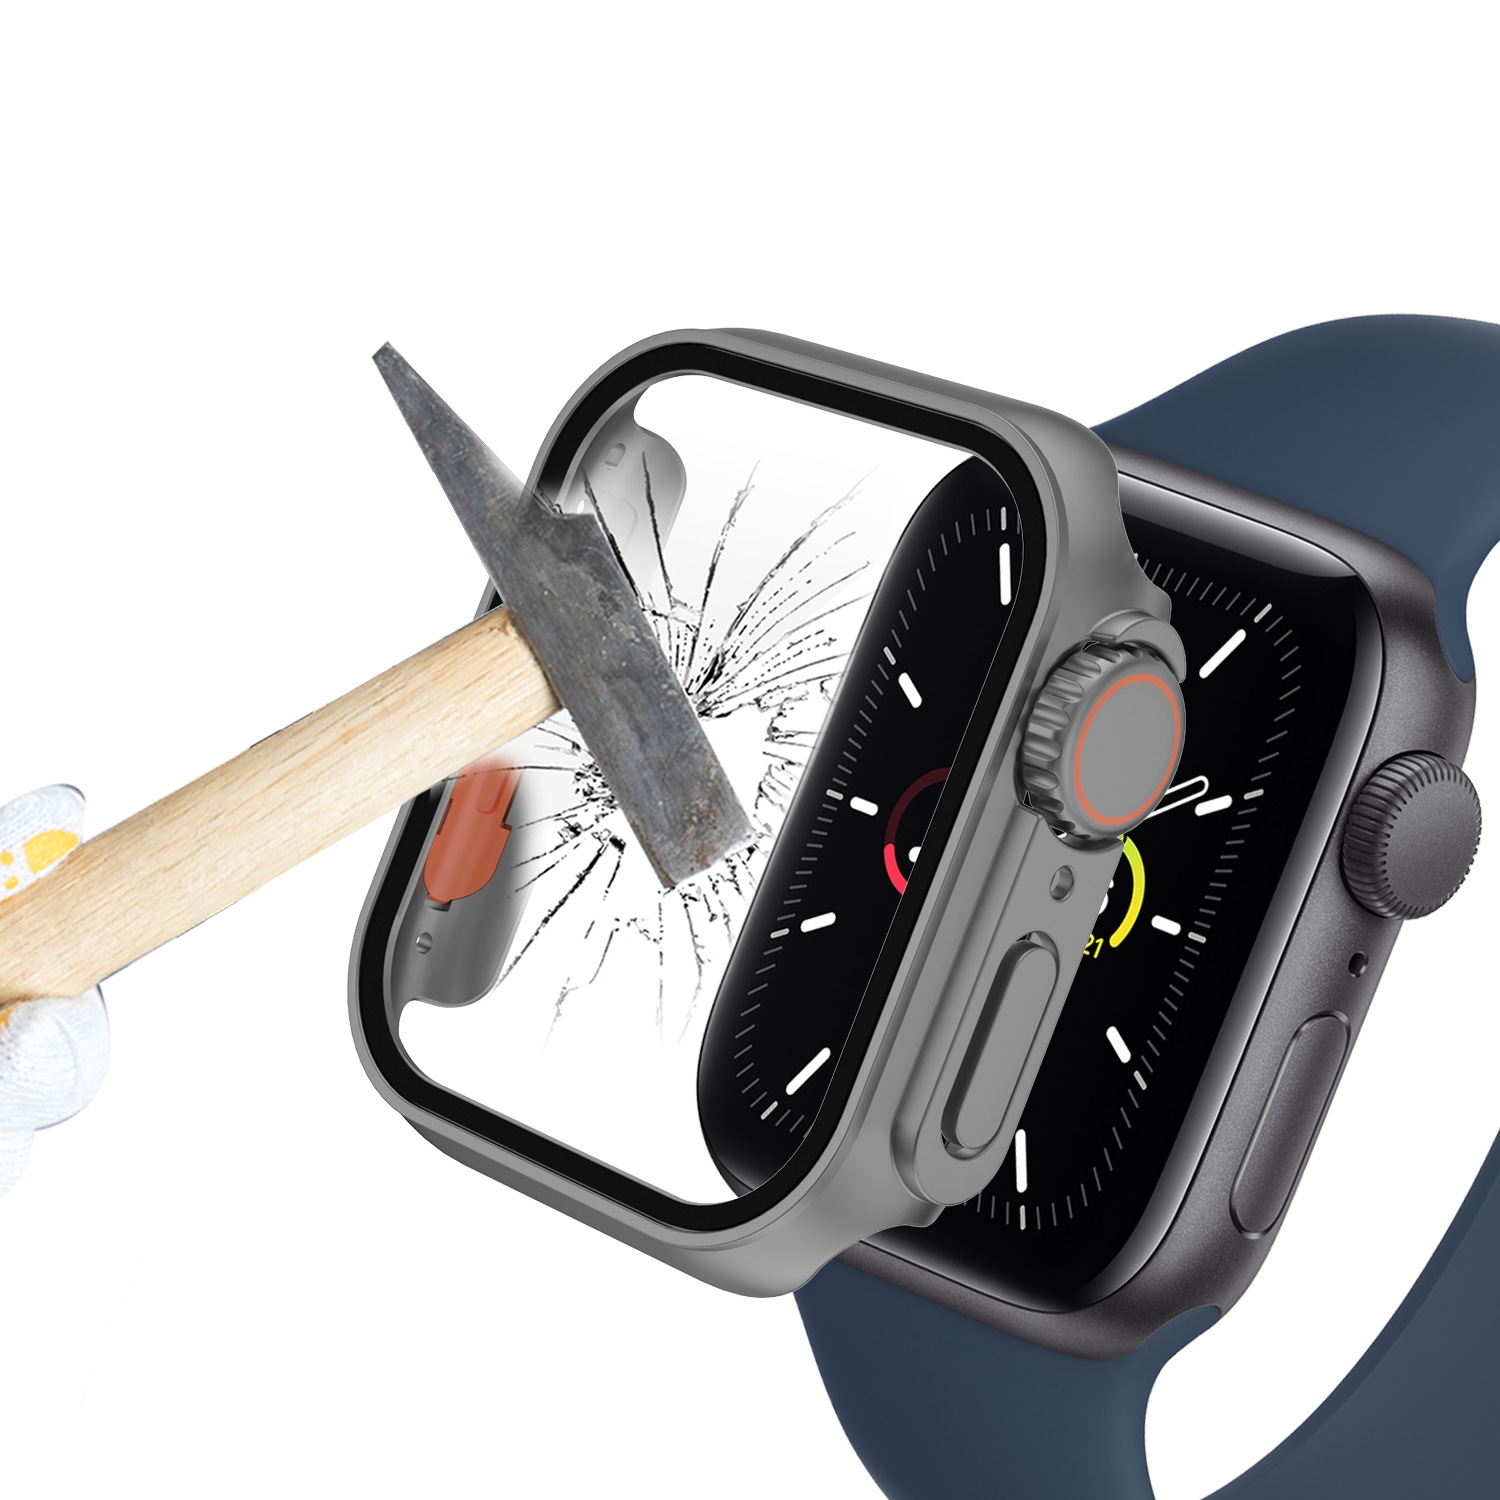 Ốp Case PC Kính Cường Lực Dành Cho Apple Watch Series 4-8/ SE Kiểu Dáng Ultra Curved Glass - Hàng Chính Hãng